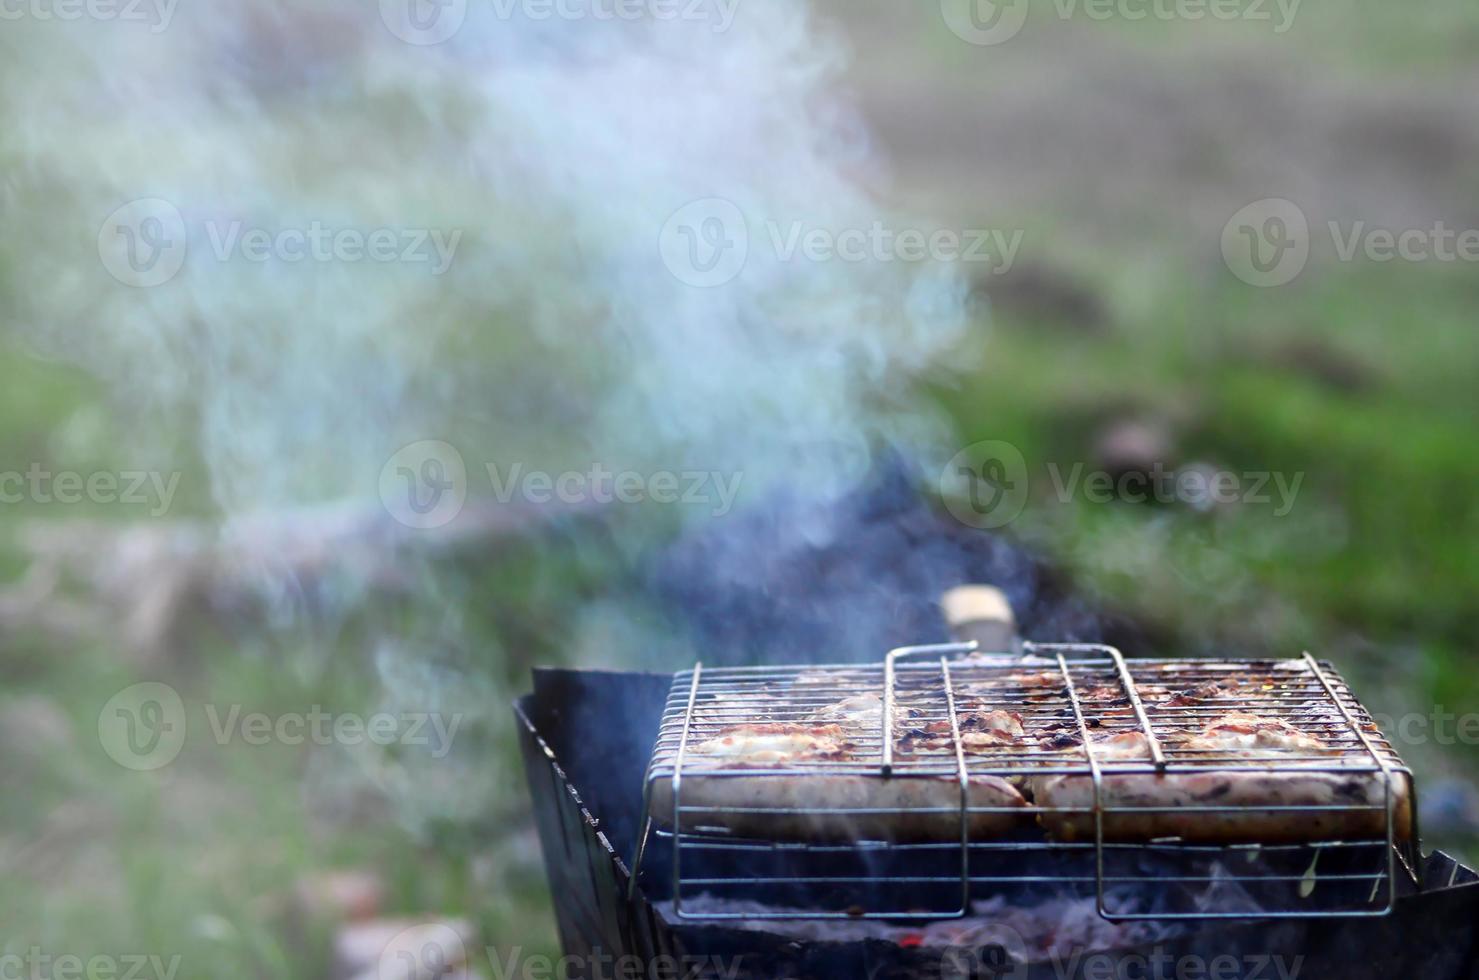 les brochettes d'ailes de poulet sont frites sur le terrain. un barbecue classique en plein air. le processus de friture de la viande sur du charbon de bois photo